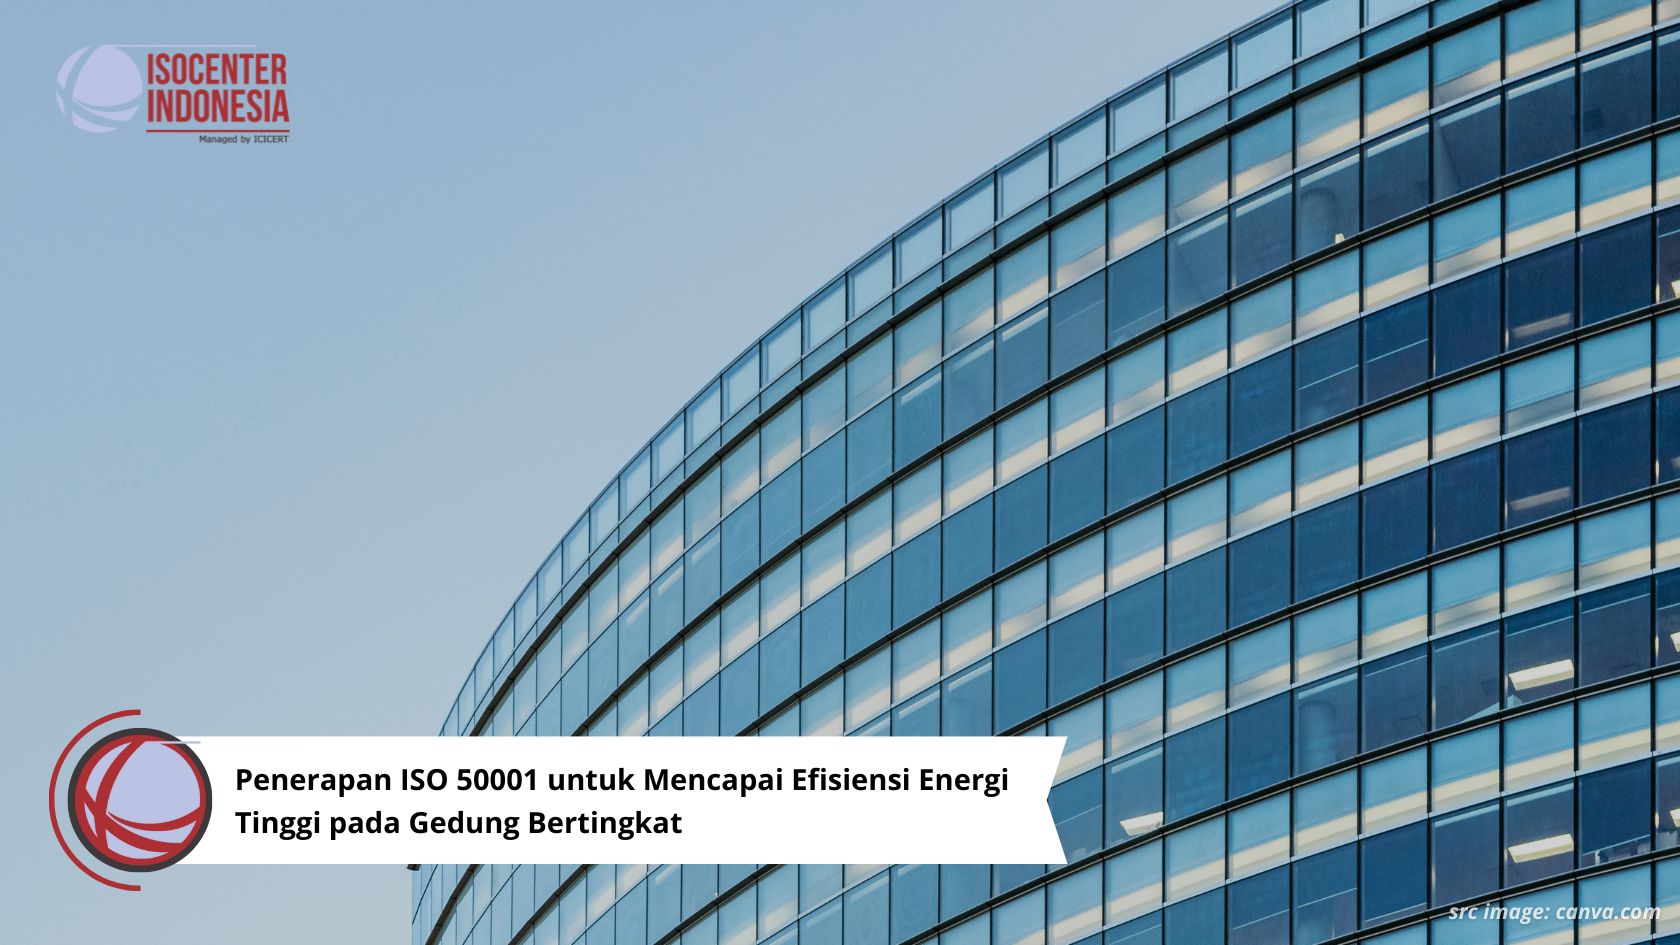 Penerapan ISO 50001 untuk Mencapai Efisiensi Energi Tinggi pada Gedung Bertingkat